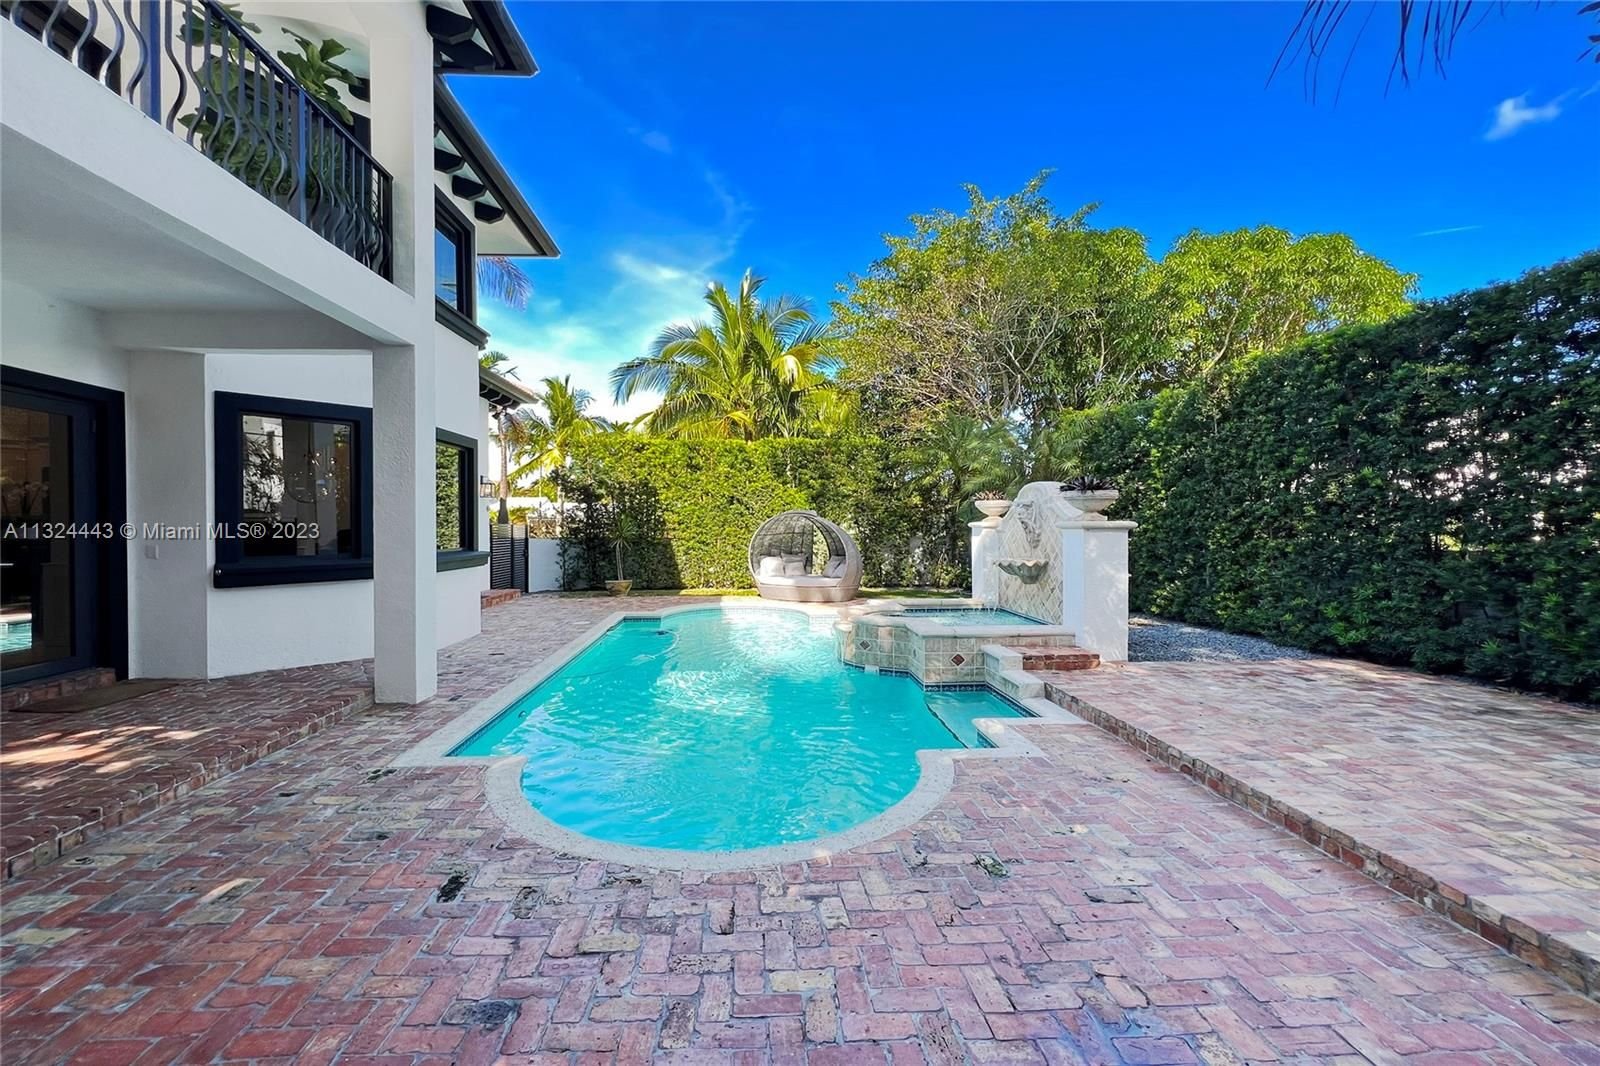 Real estate property located at 6045 La Gorce Dr, Miami-Dade County, Miami Beach, FL